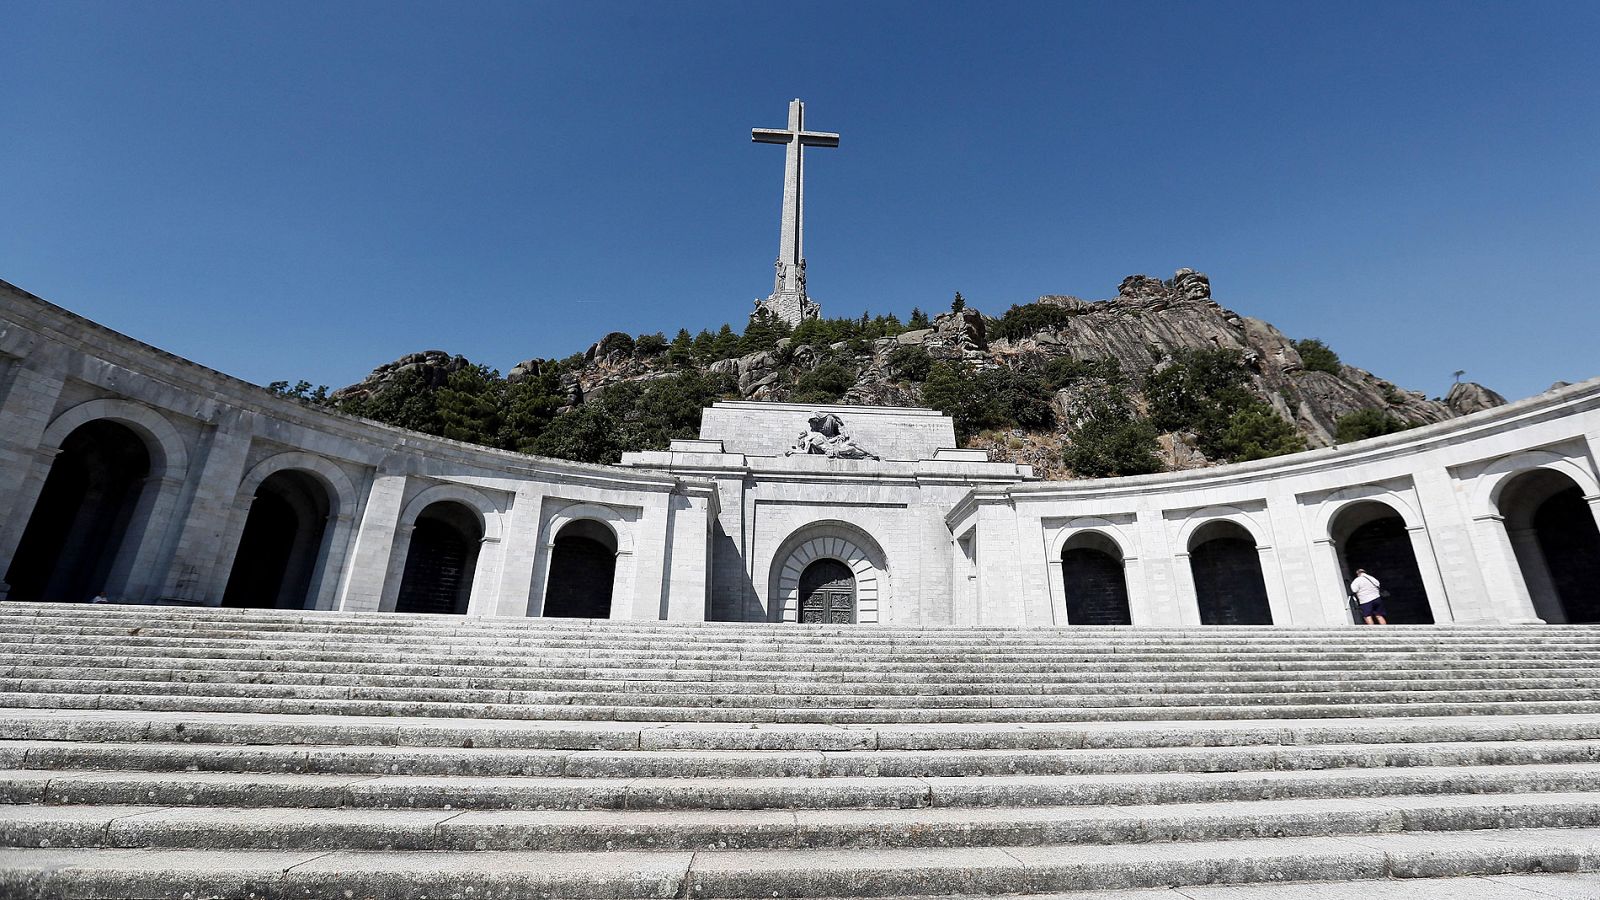 Vista de la basílica del Valle de los Caídos, donde están enterrados los restos del dictador Francisco Franco